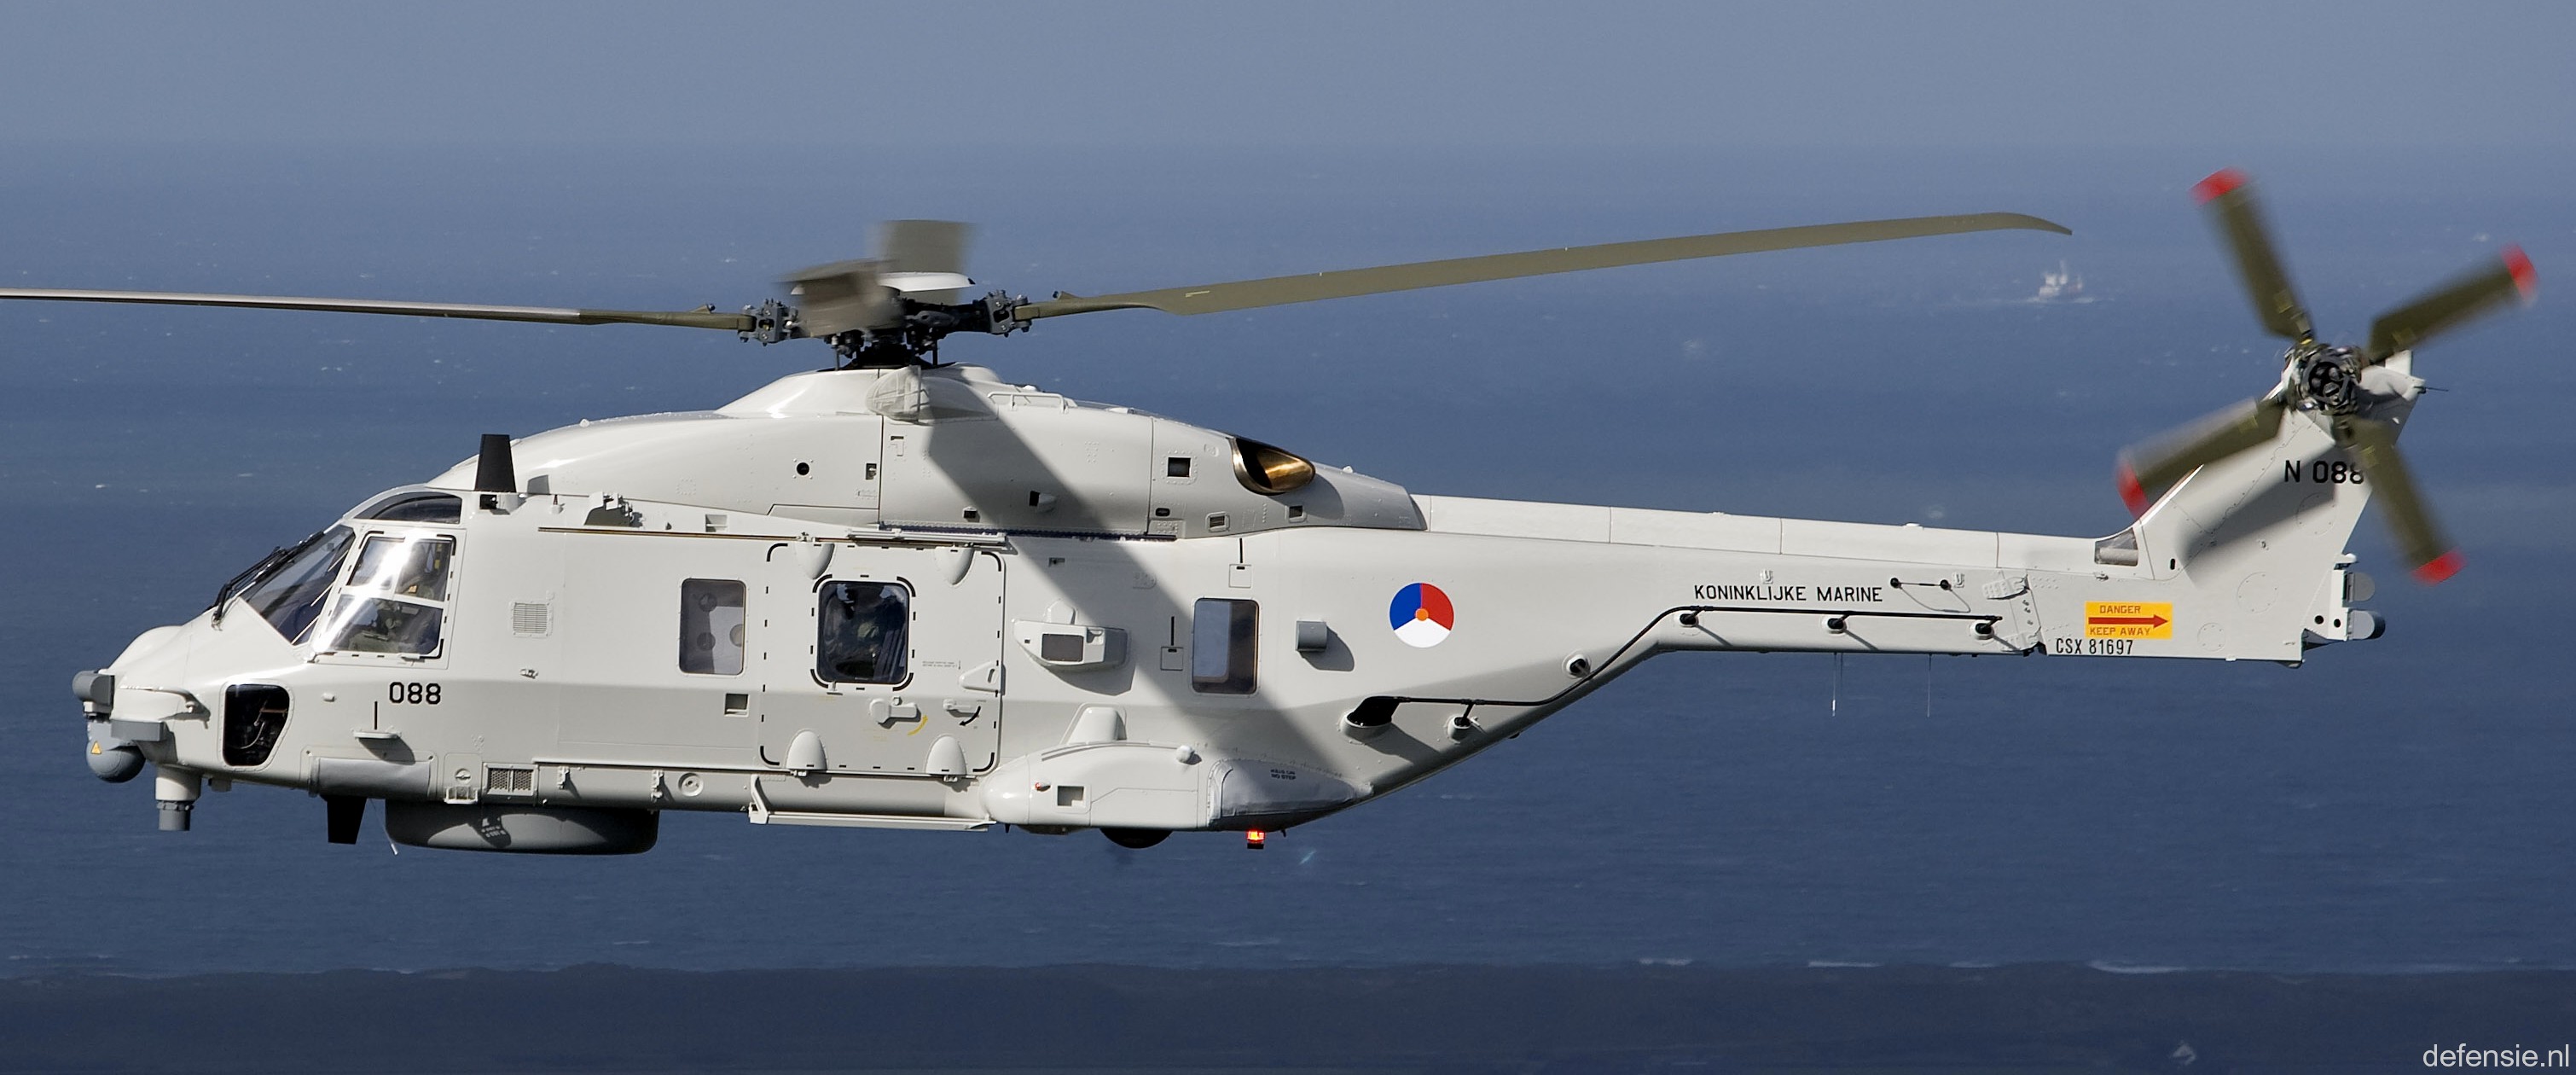 nh90 nfh helicopter royal netherlands navy koninklijke marine n-088 02